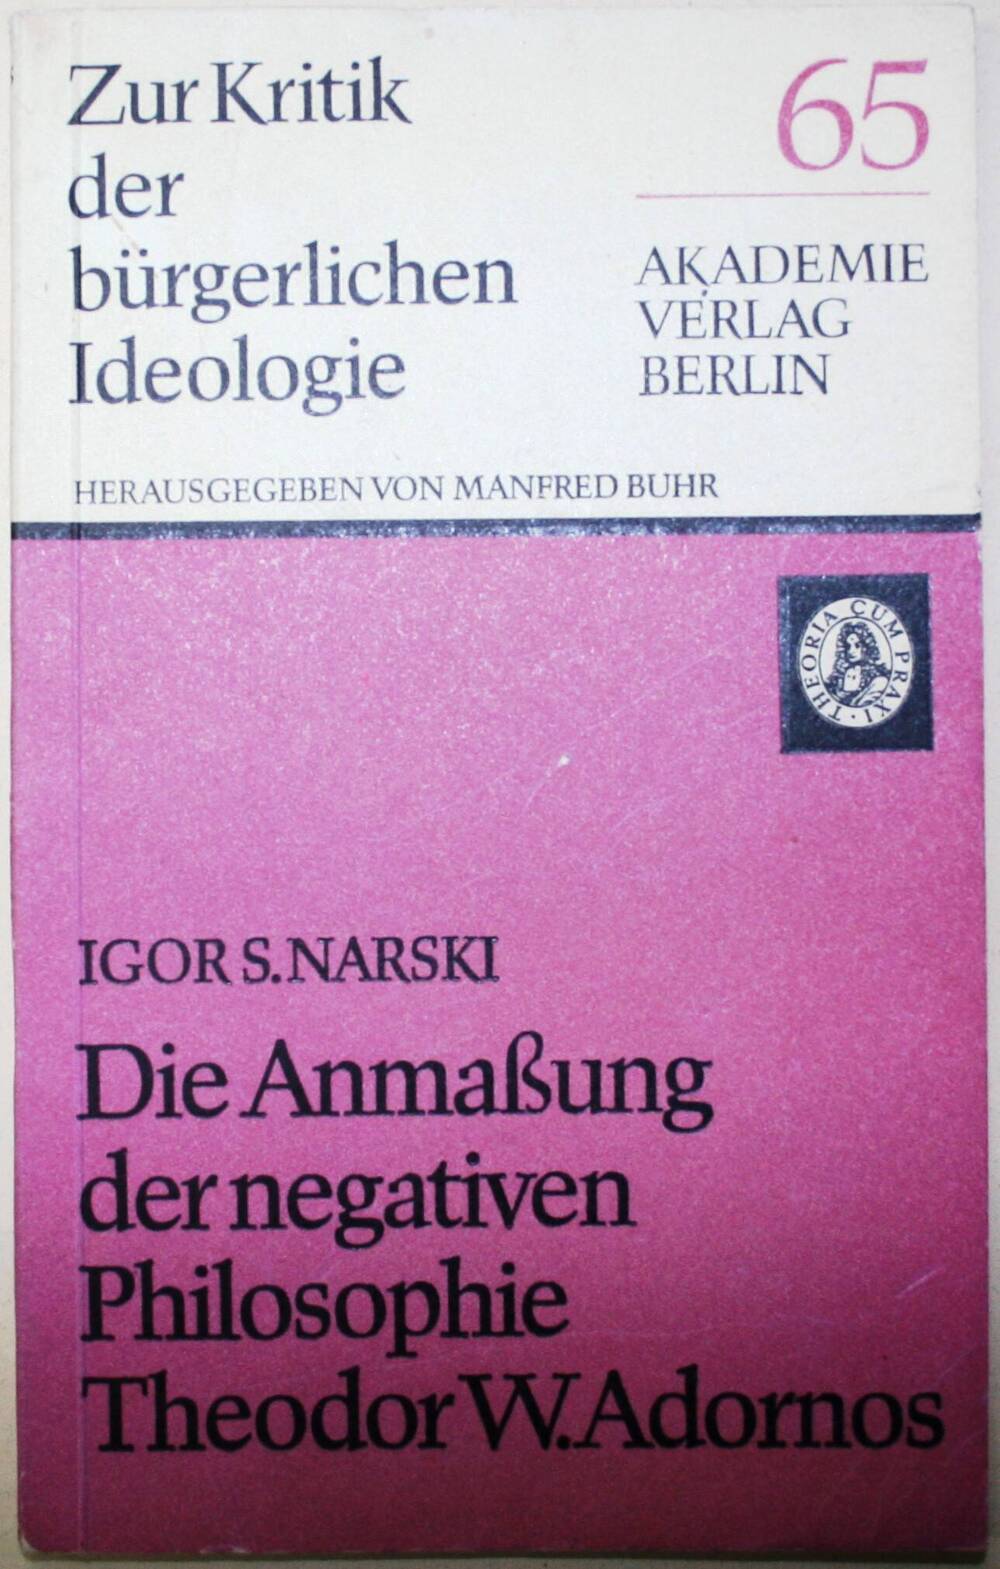 Zur Kritik der bürgerlichen Ideologie.Die Anmaßung der negative Philosoph Theodor W.Adornos.